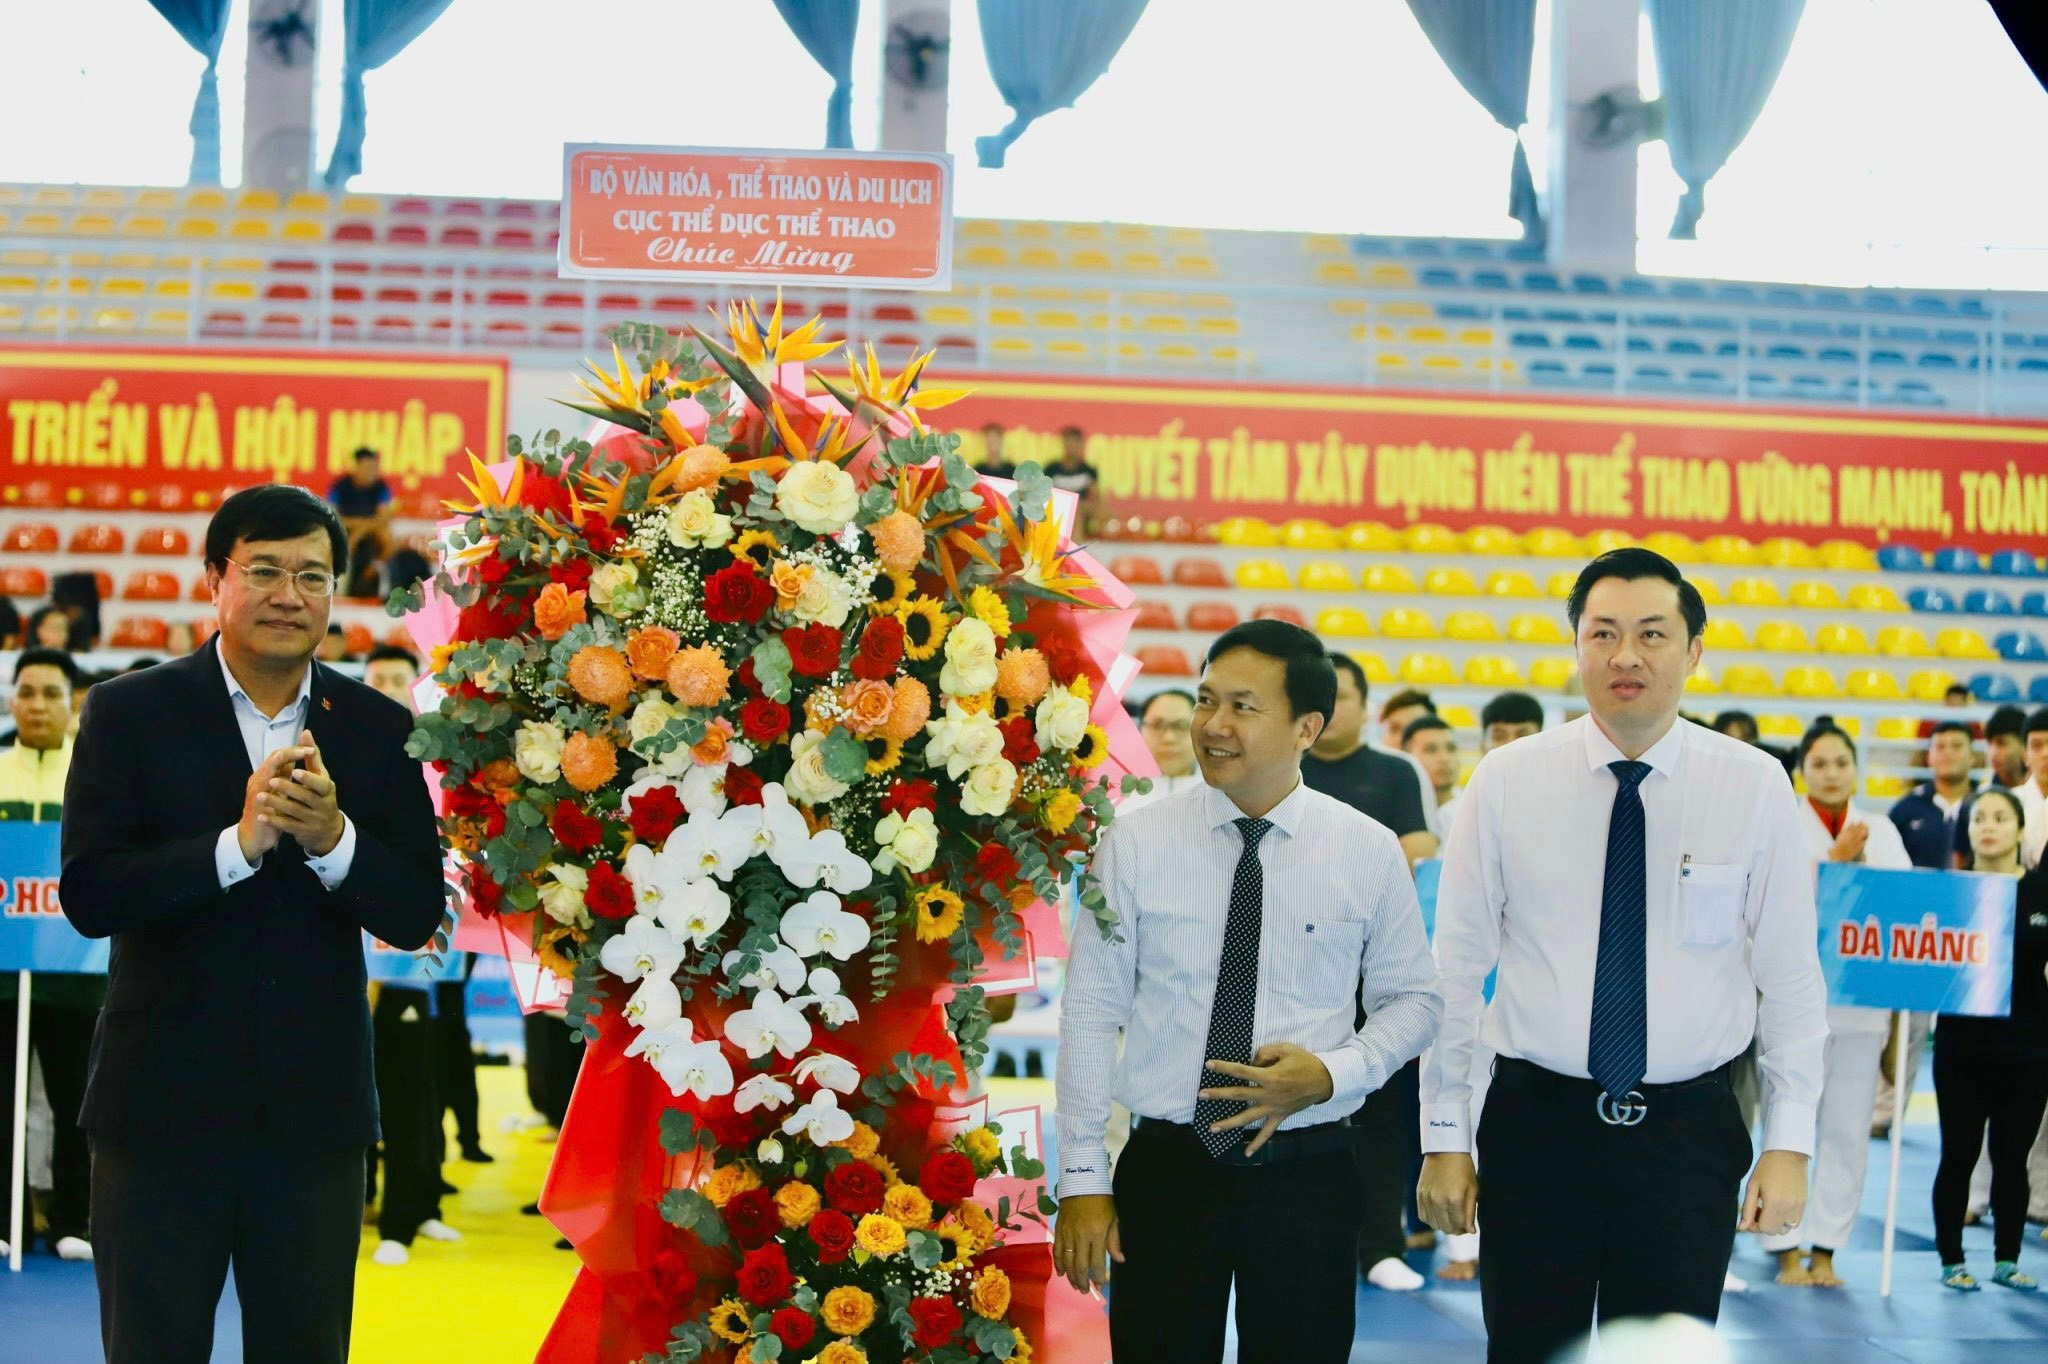 PGS.TS Đặng Hà Việt – Cục trưởng Cục Thể dục Thể thao (bên trái) tặng hoa cho địa phương đăng cai.